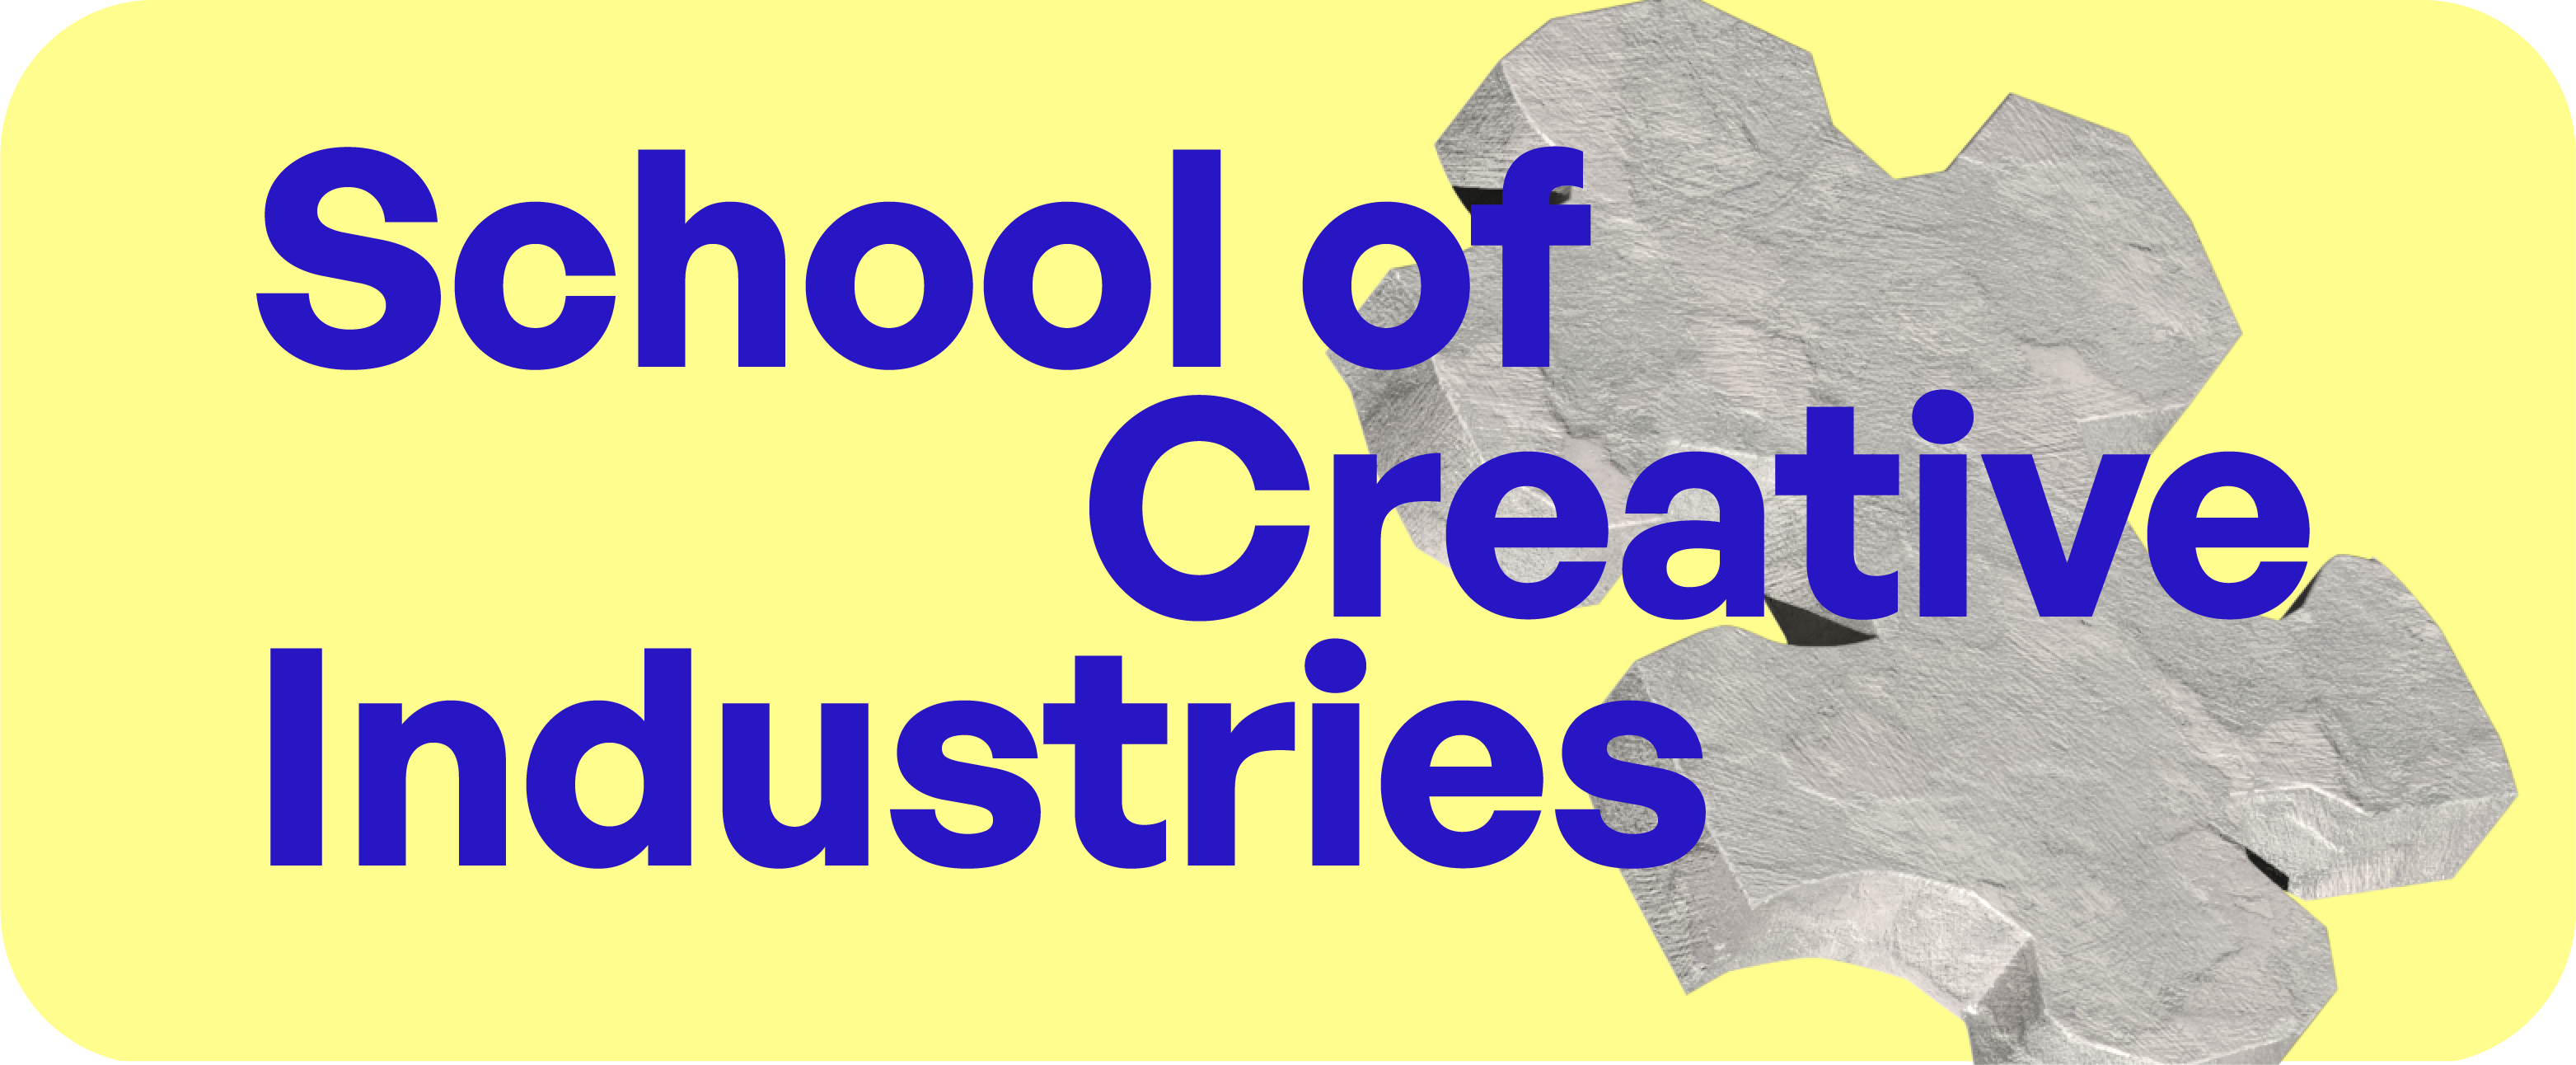 School of Creative Industries